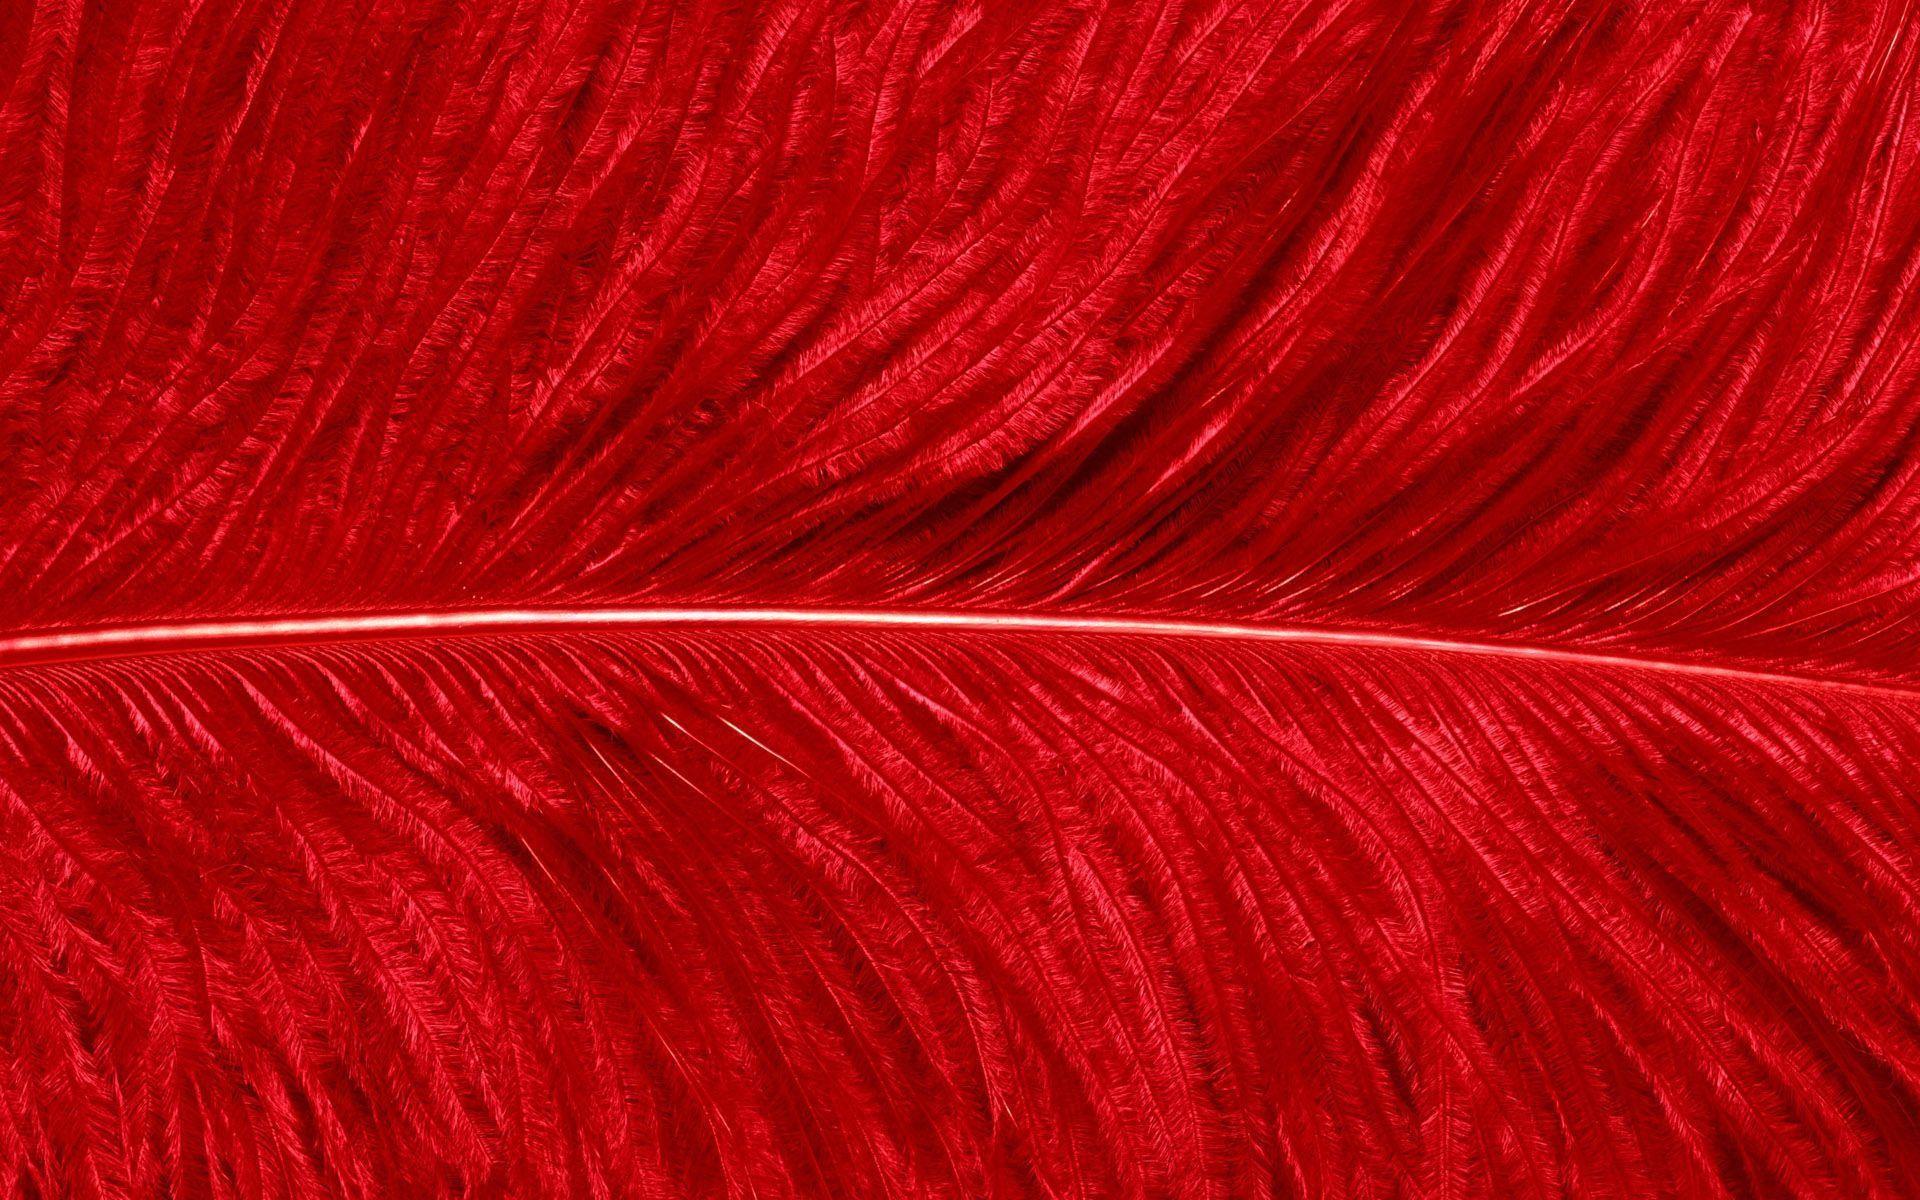 Red Wallpaper Texture 59 Background. Wallruru